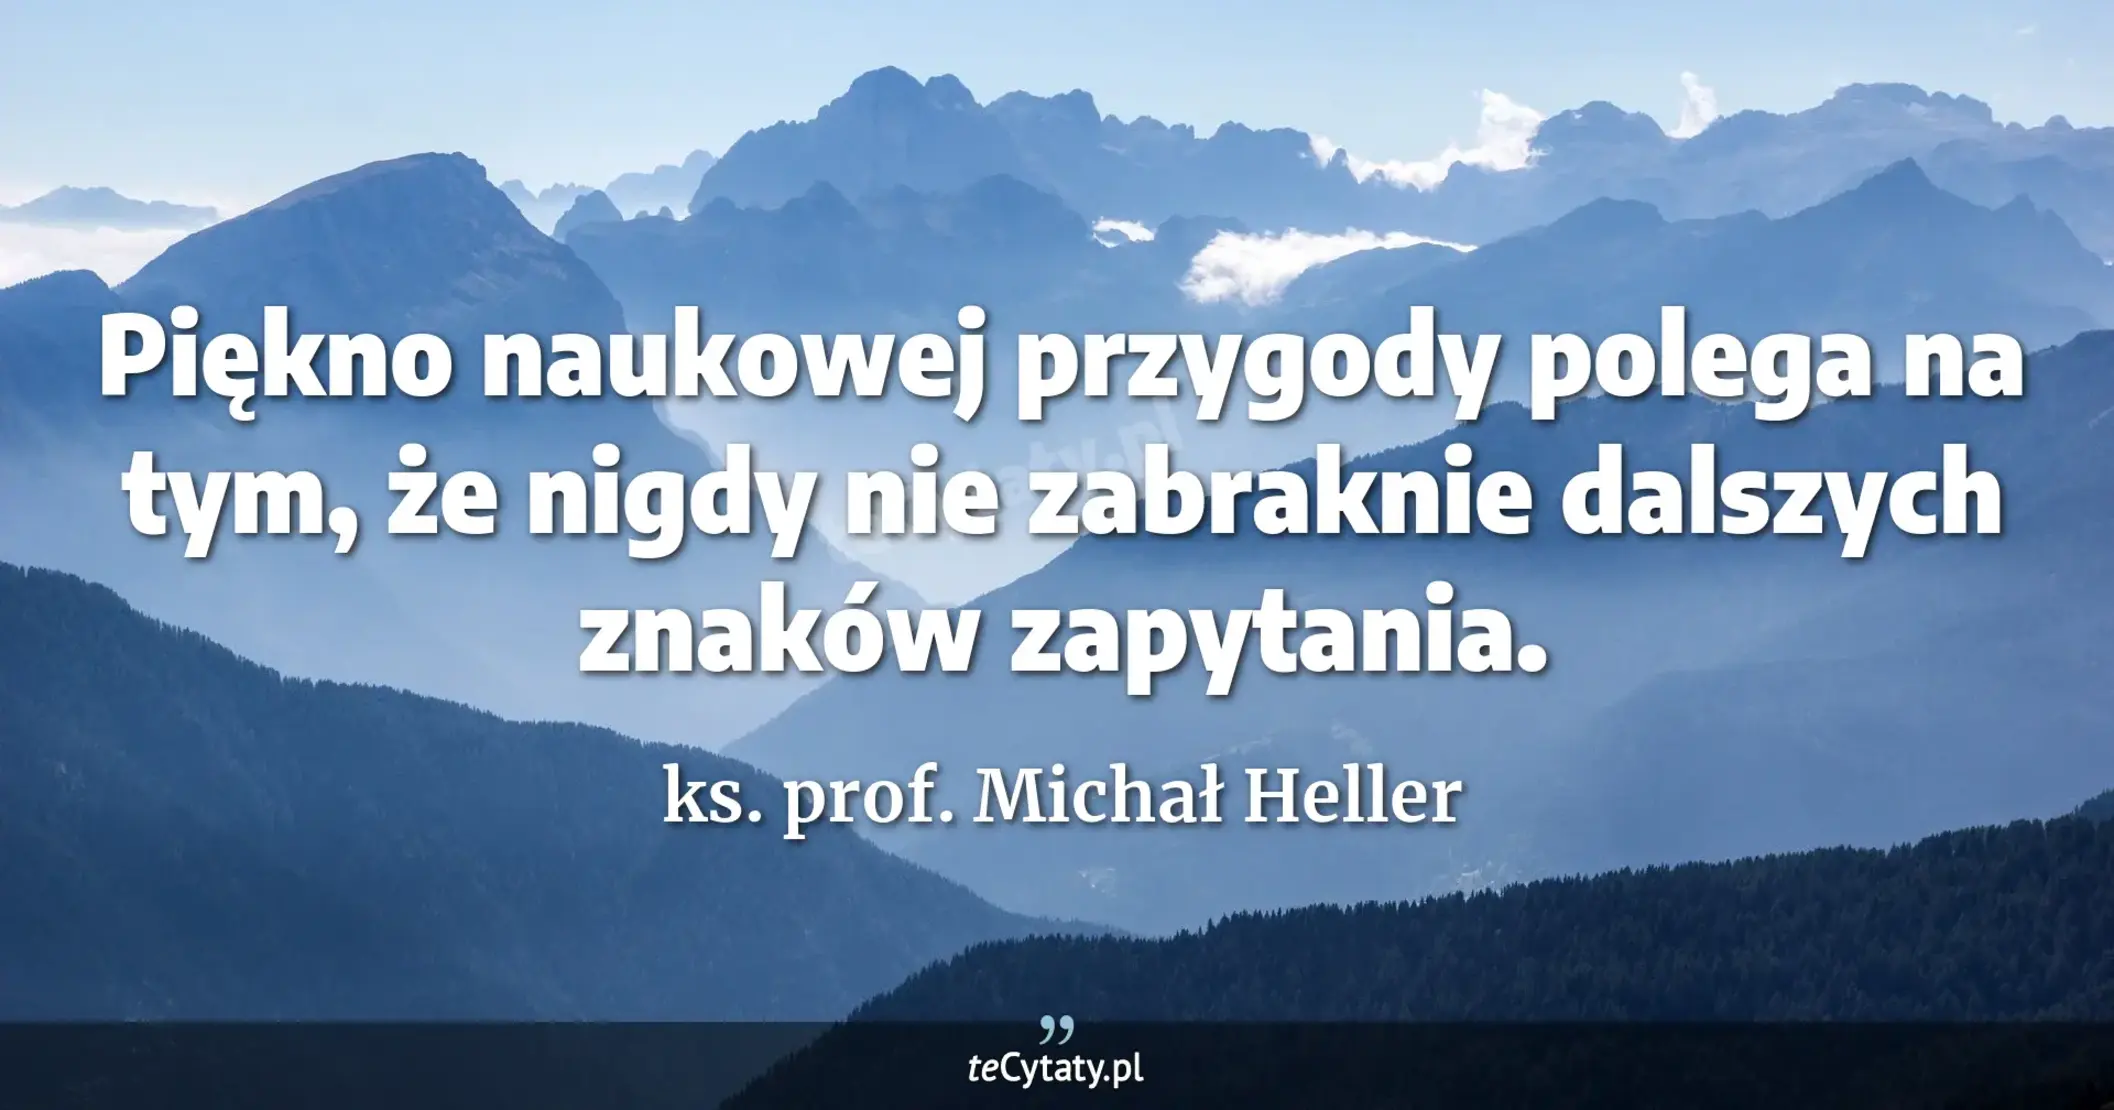 Piękno naukowej przygody polega na tym, że nigdy nie zabraknie dalszych znaków zapytania. - ks. prof. Michał Heller